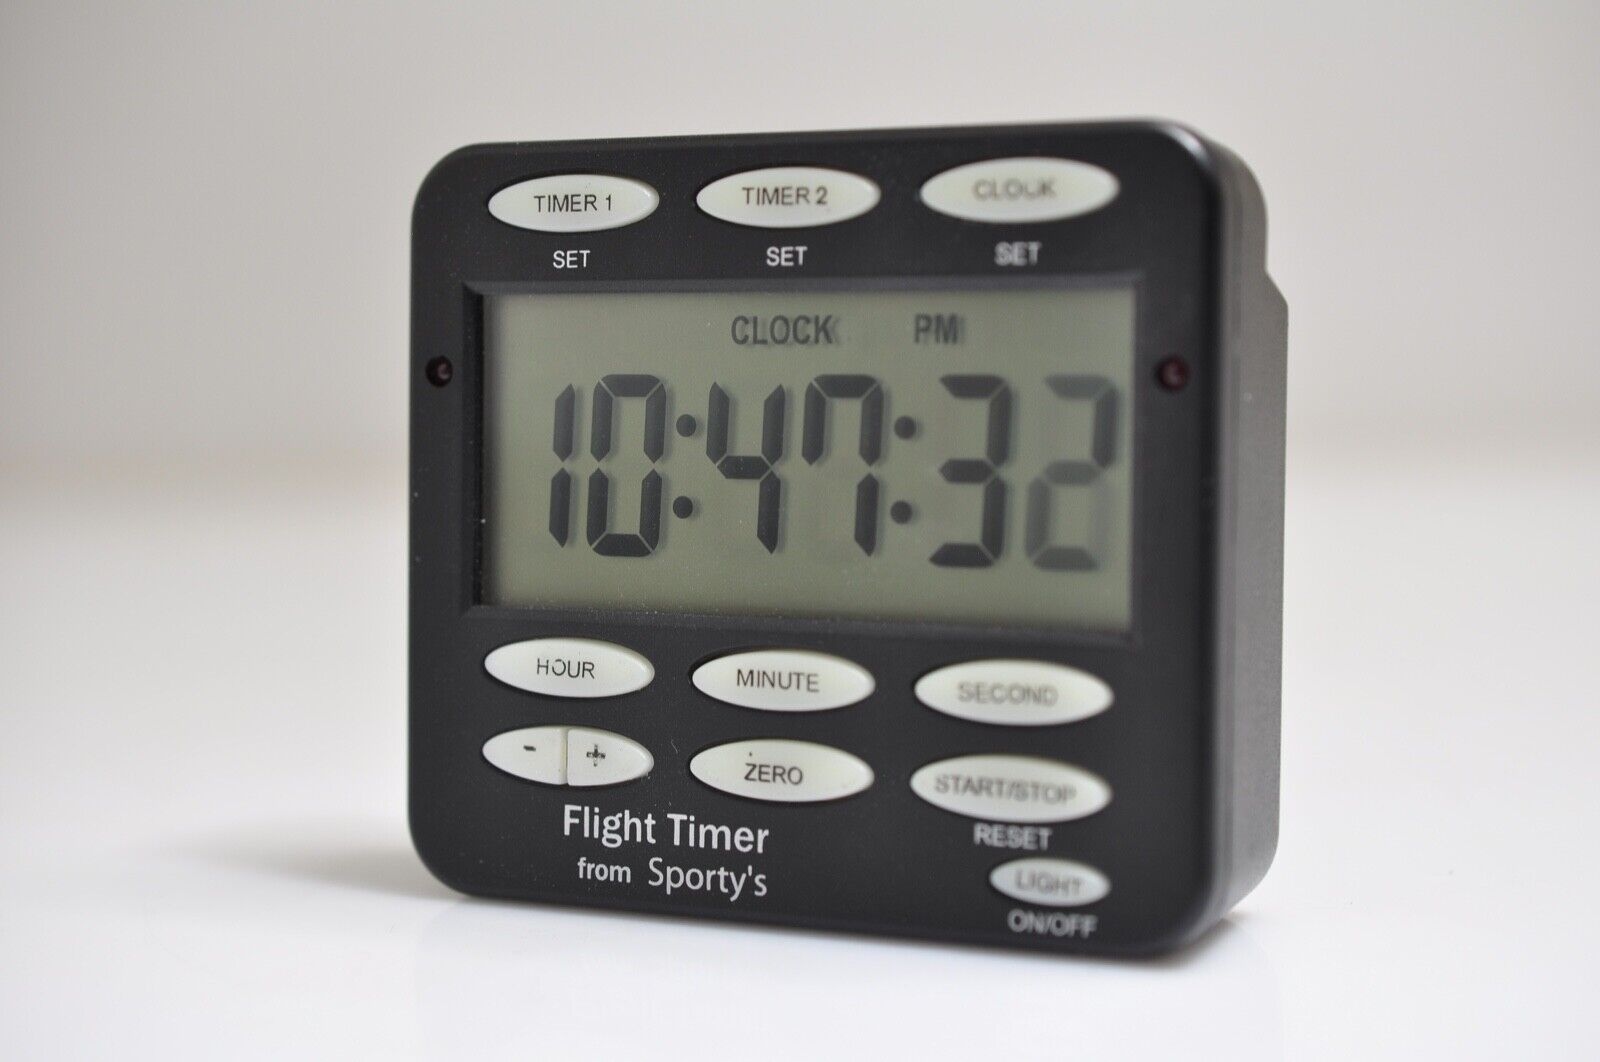 Flight Timer by Sportys Digital Aviation Flight Timer